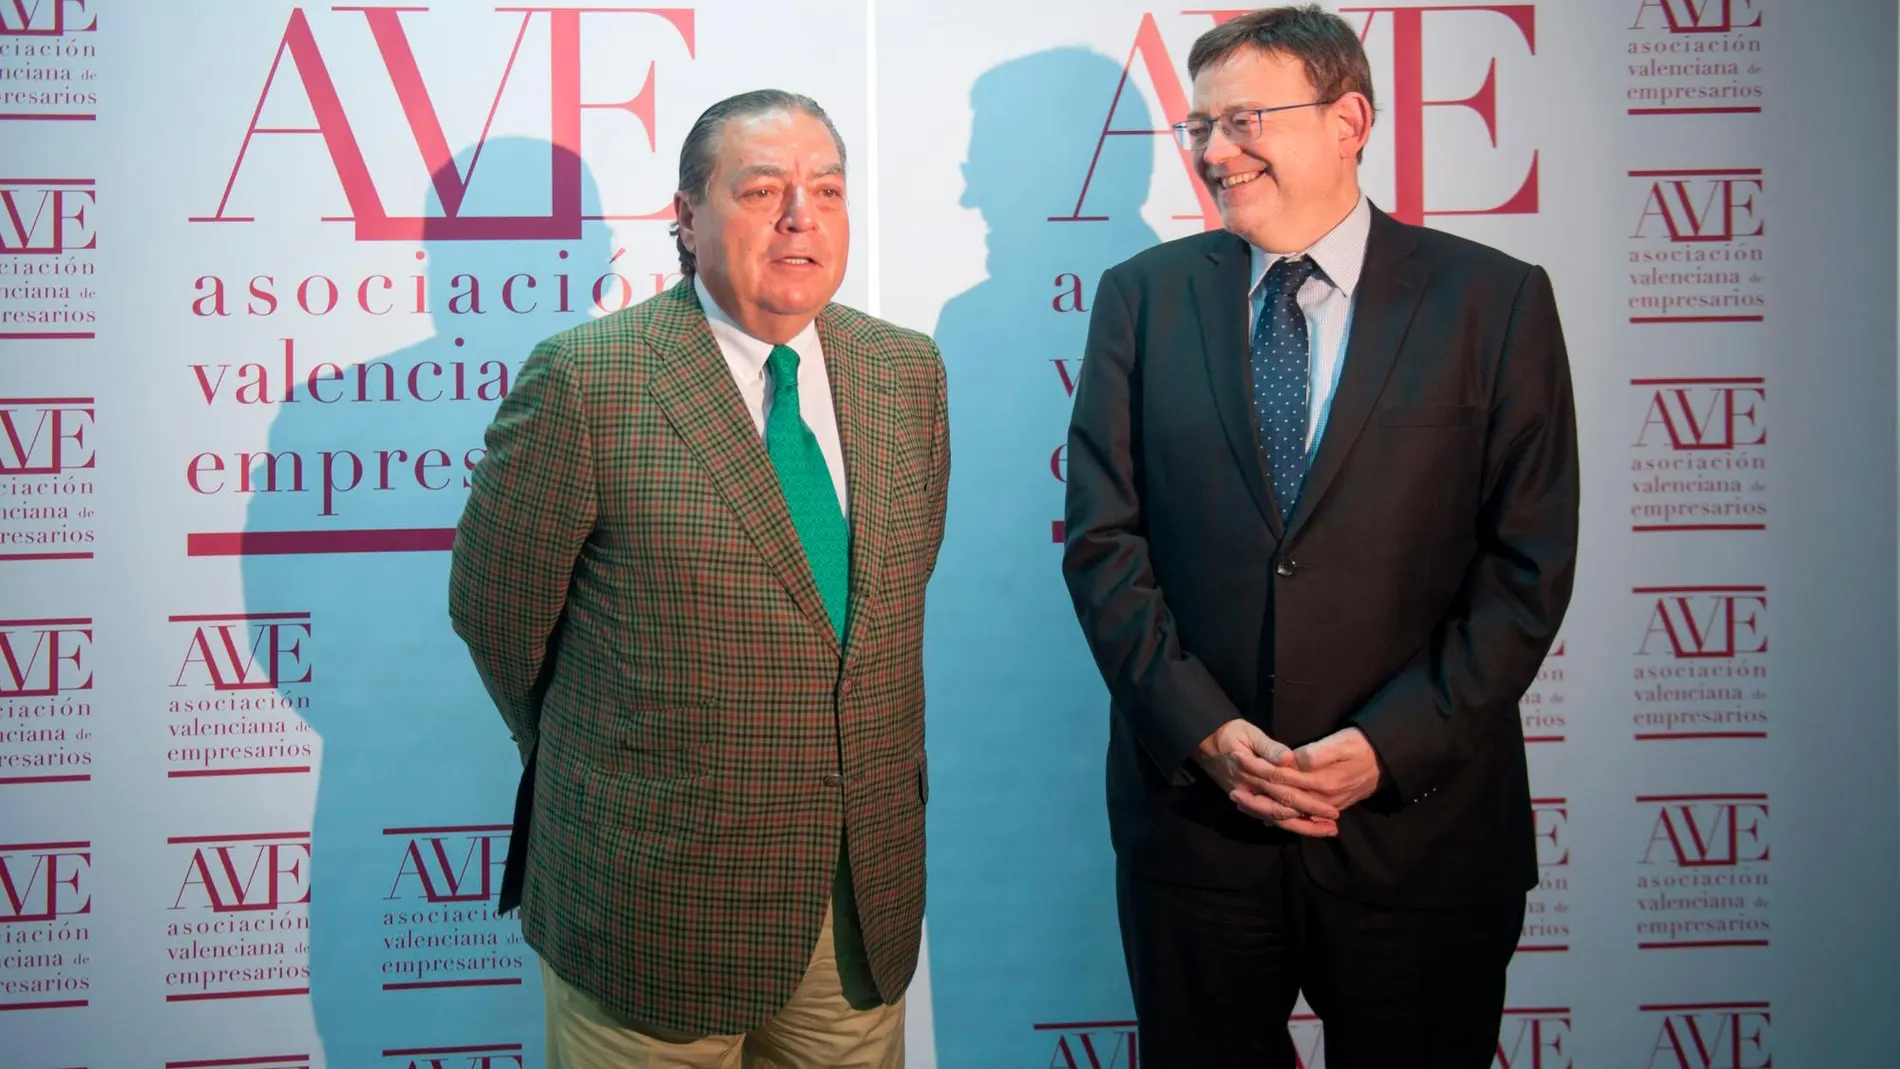 El presidente de la Asociación Valenciana de Empresarios (AVE), Vicente Boluda, junto al presidente de la Generalitat, Ximo Puig